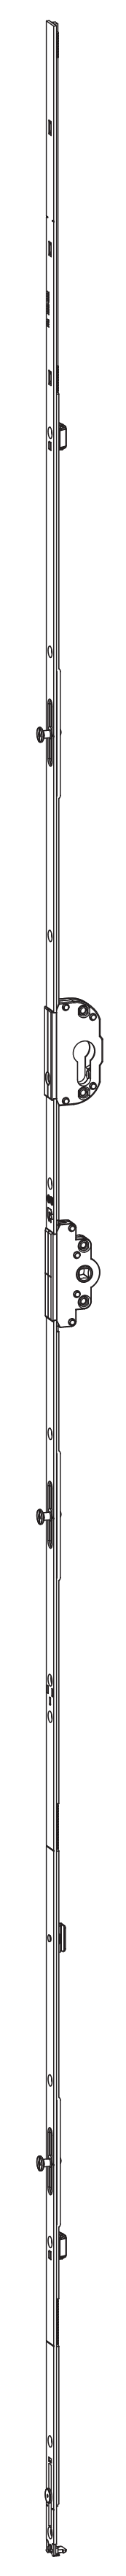 GU-ITALIA -  Cremonese UNI-JET anta ribalta altezza maniglia fissa con foro cilindro sopra la maniglia e quadro - gr / dim. 2190 - entrata 40 - alt. man. 950 - lbb/hbb 1851-2100